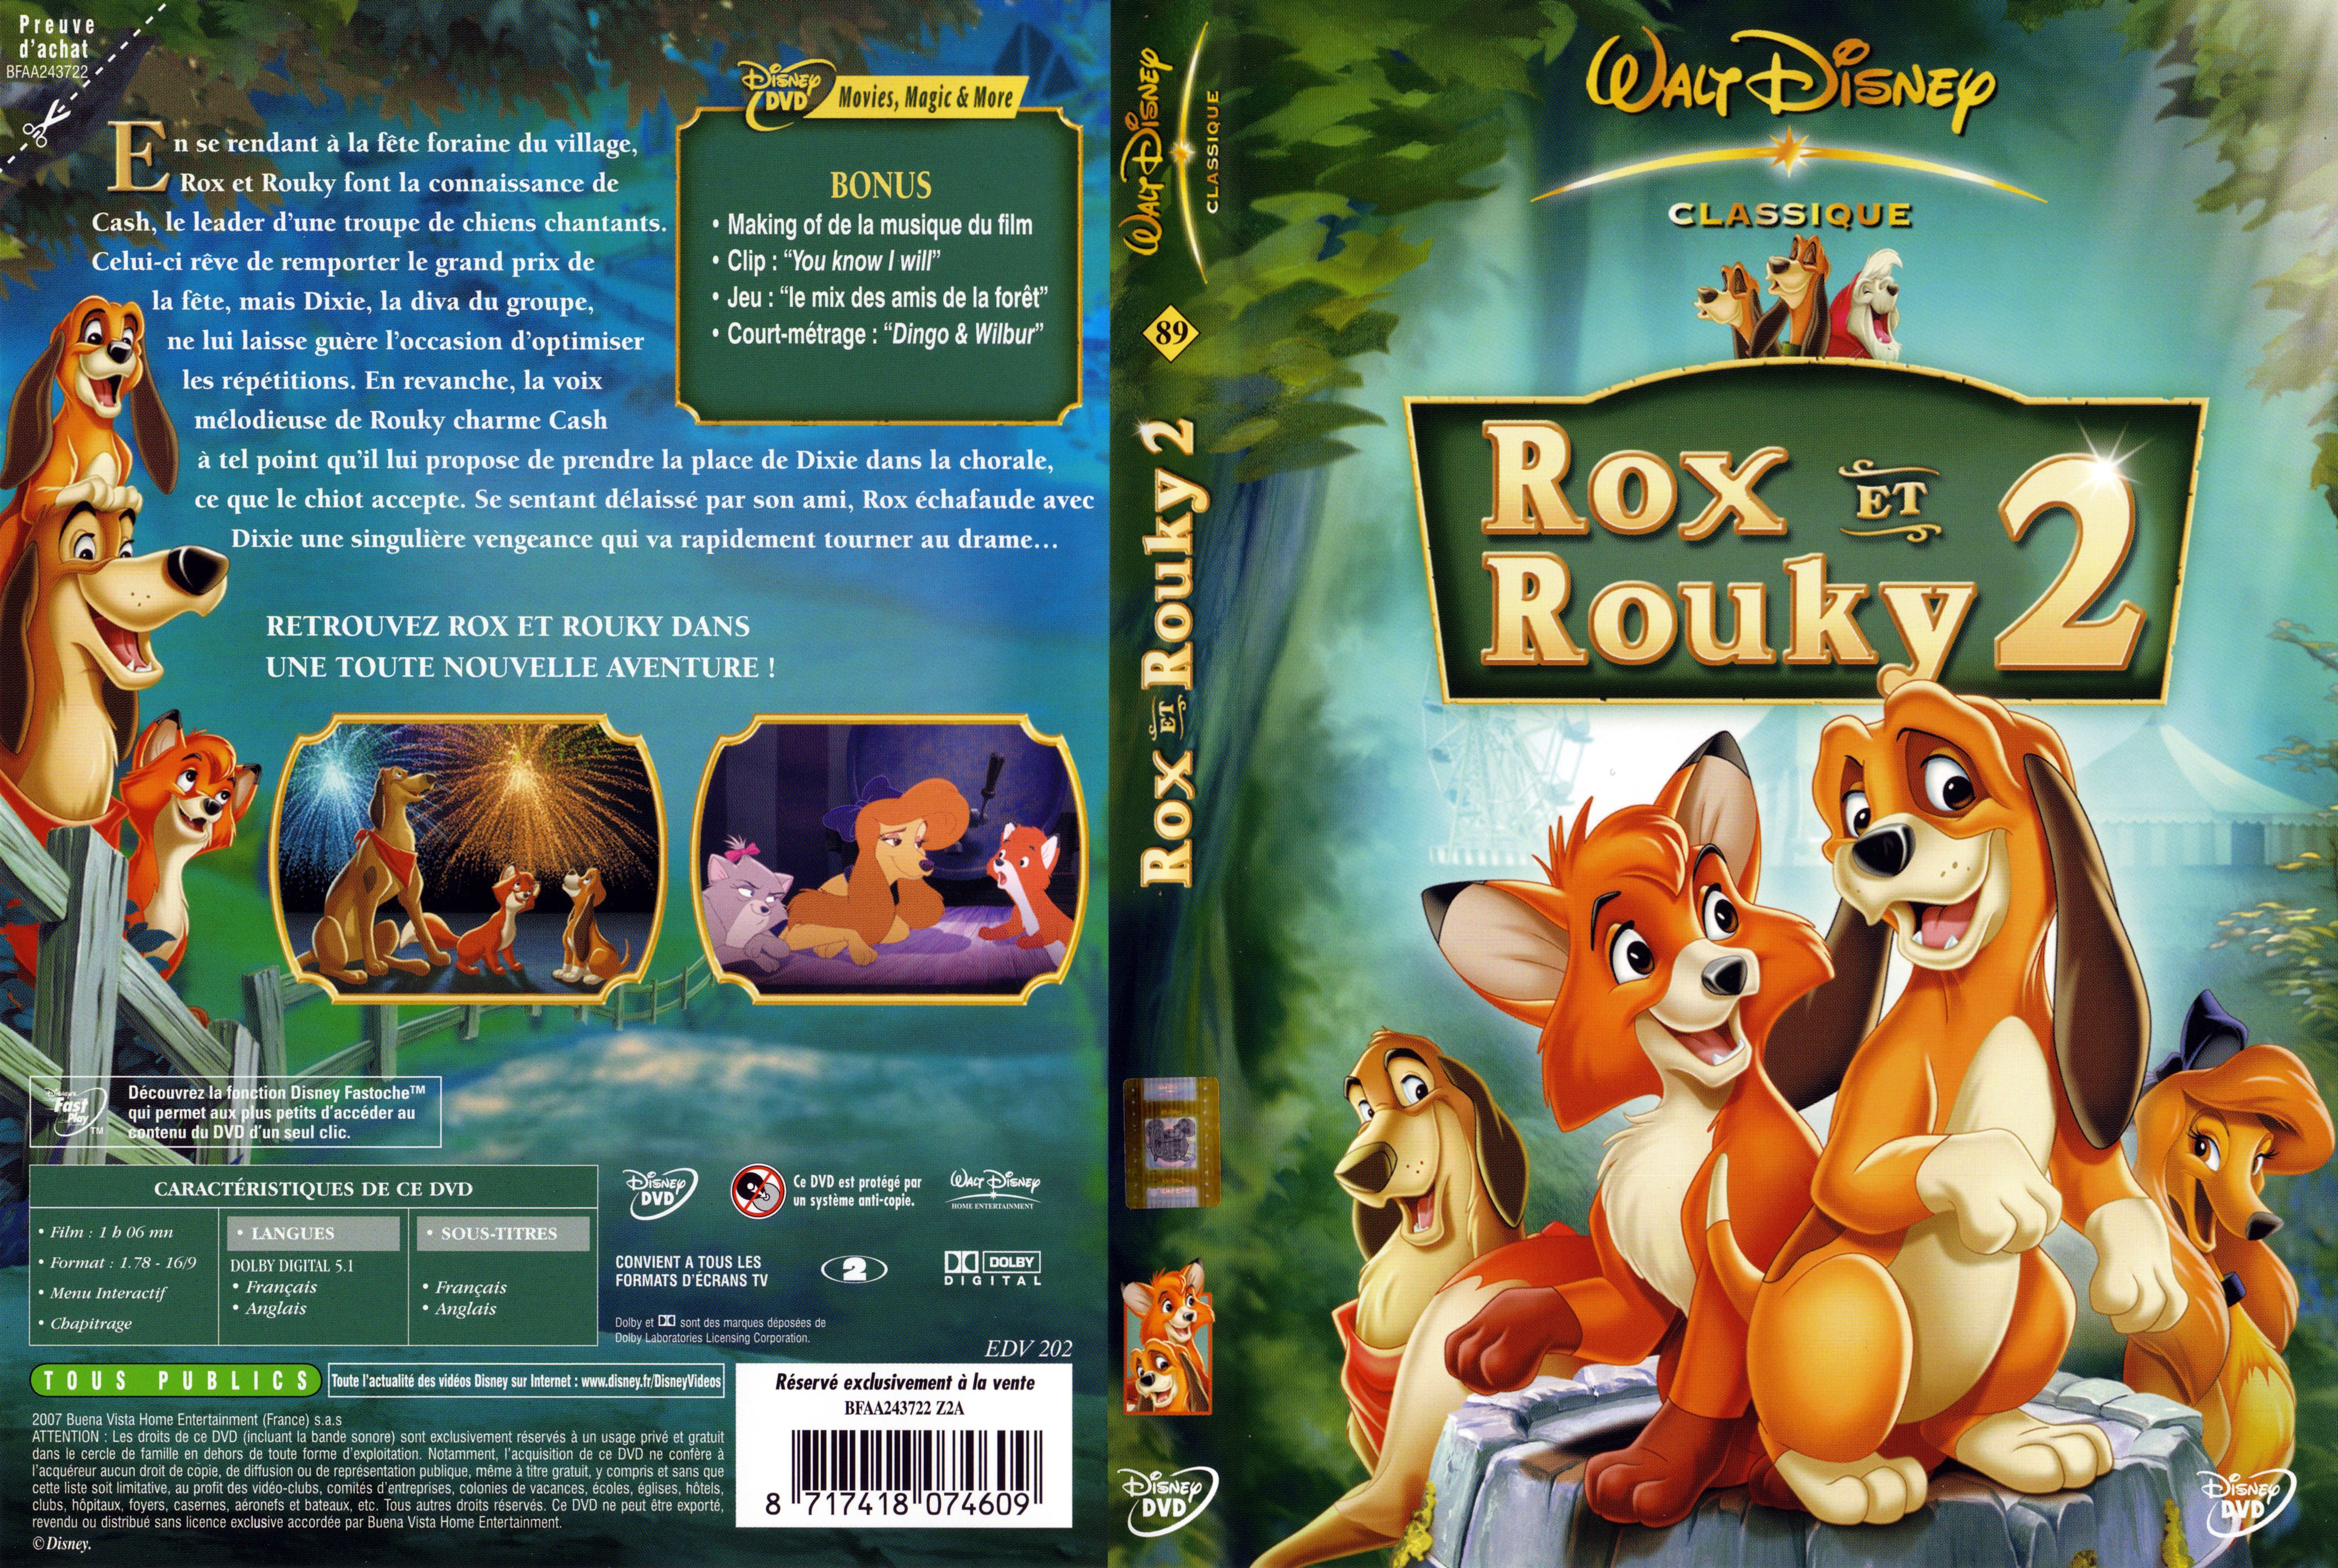 Jaquette DVD Rox et Rouky 2